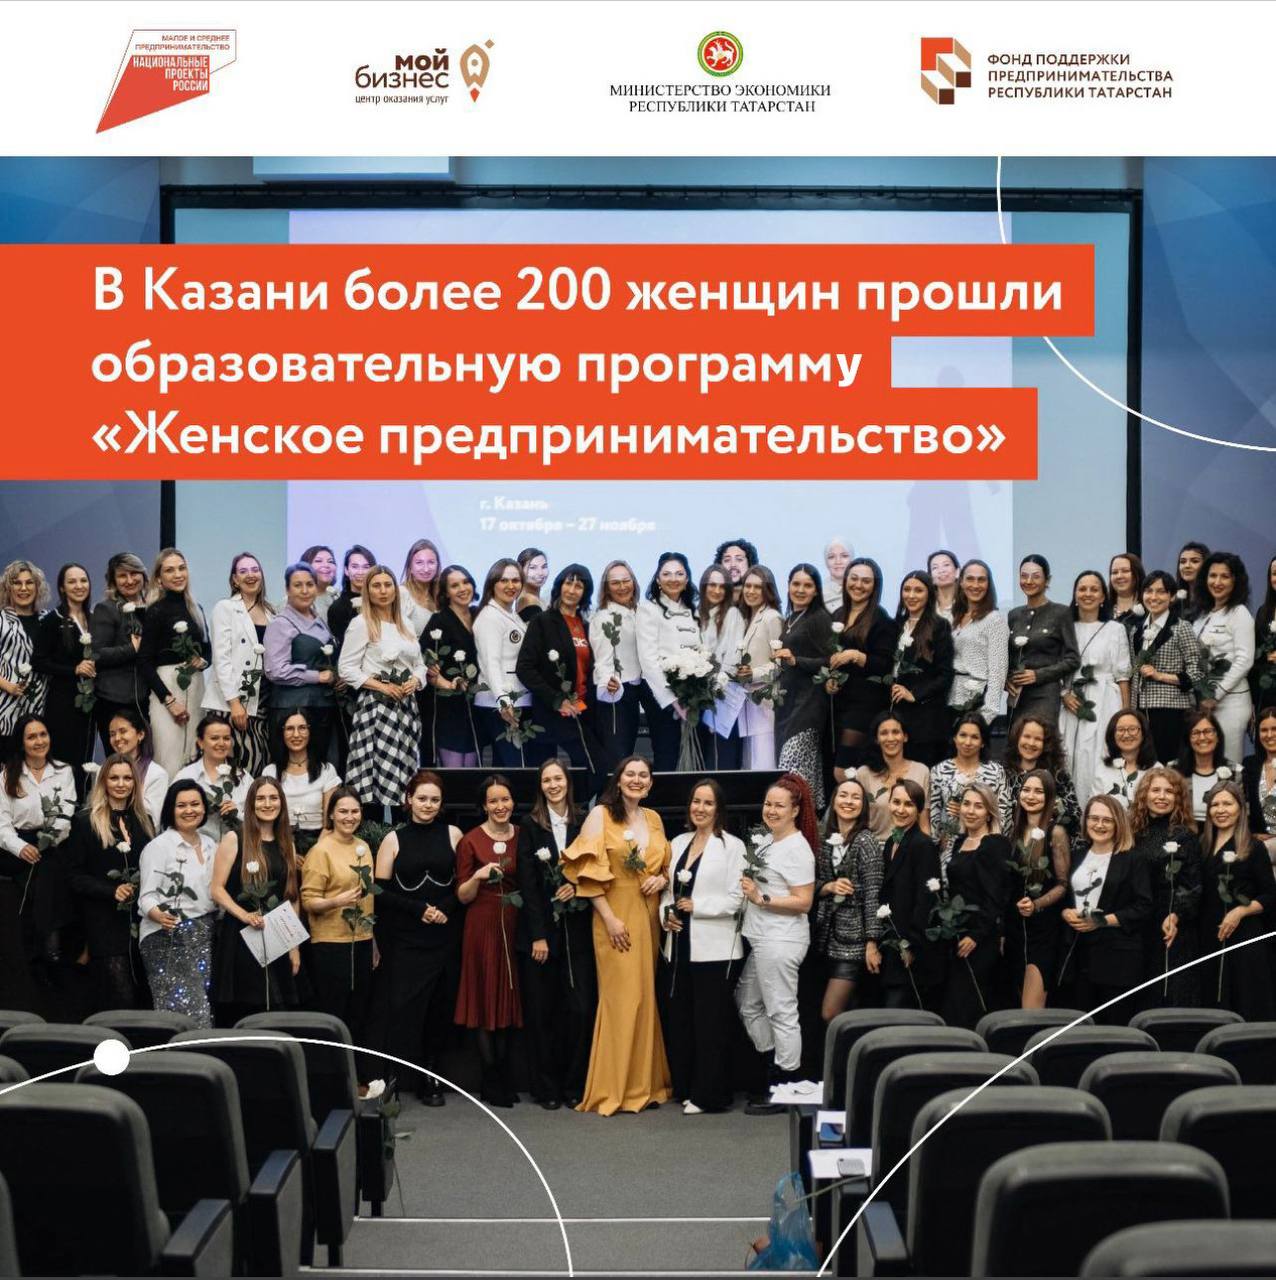 Бизнес с женским лицом может быть успешным и перспективным. В Казани более 200 женщин прошли образовательную программу «Женское предпринимательство».